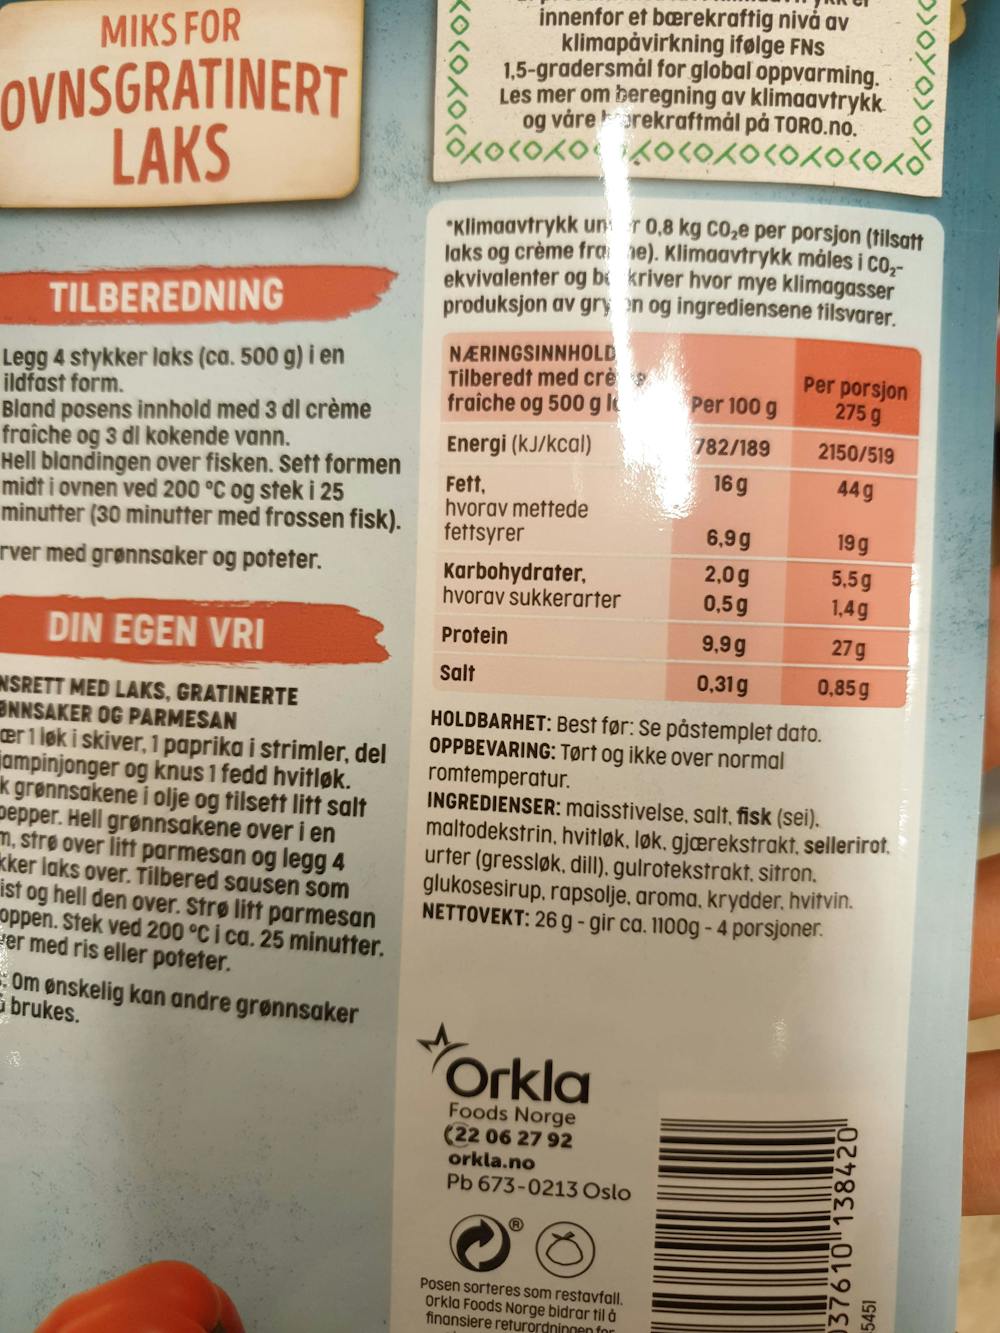 Ingredienslisten til Miks for ovnsgratinert laks, i kremet saus med sitron & urter, Toro